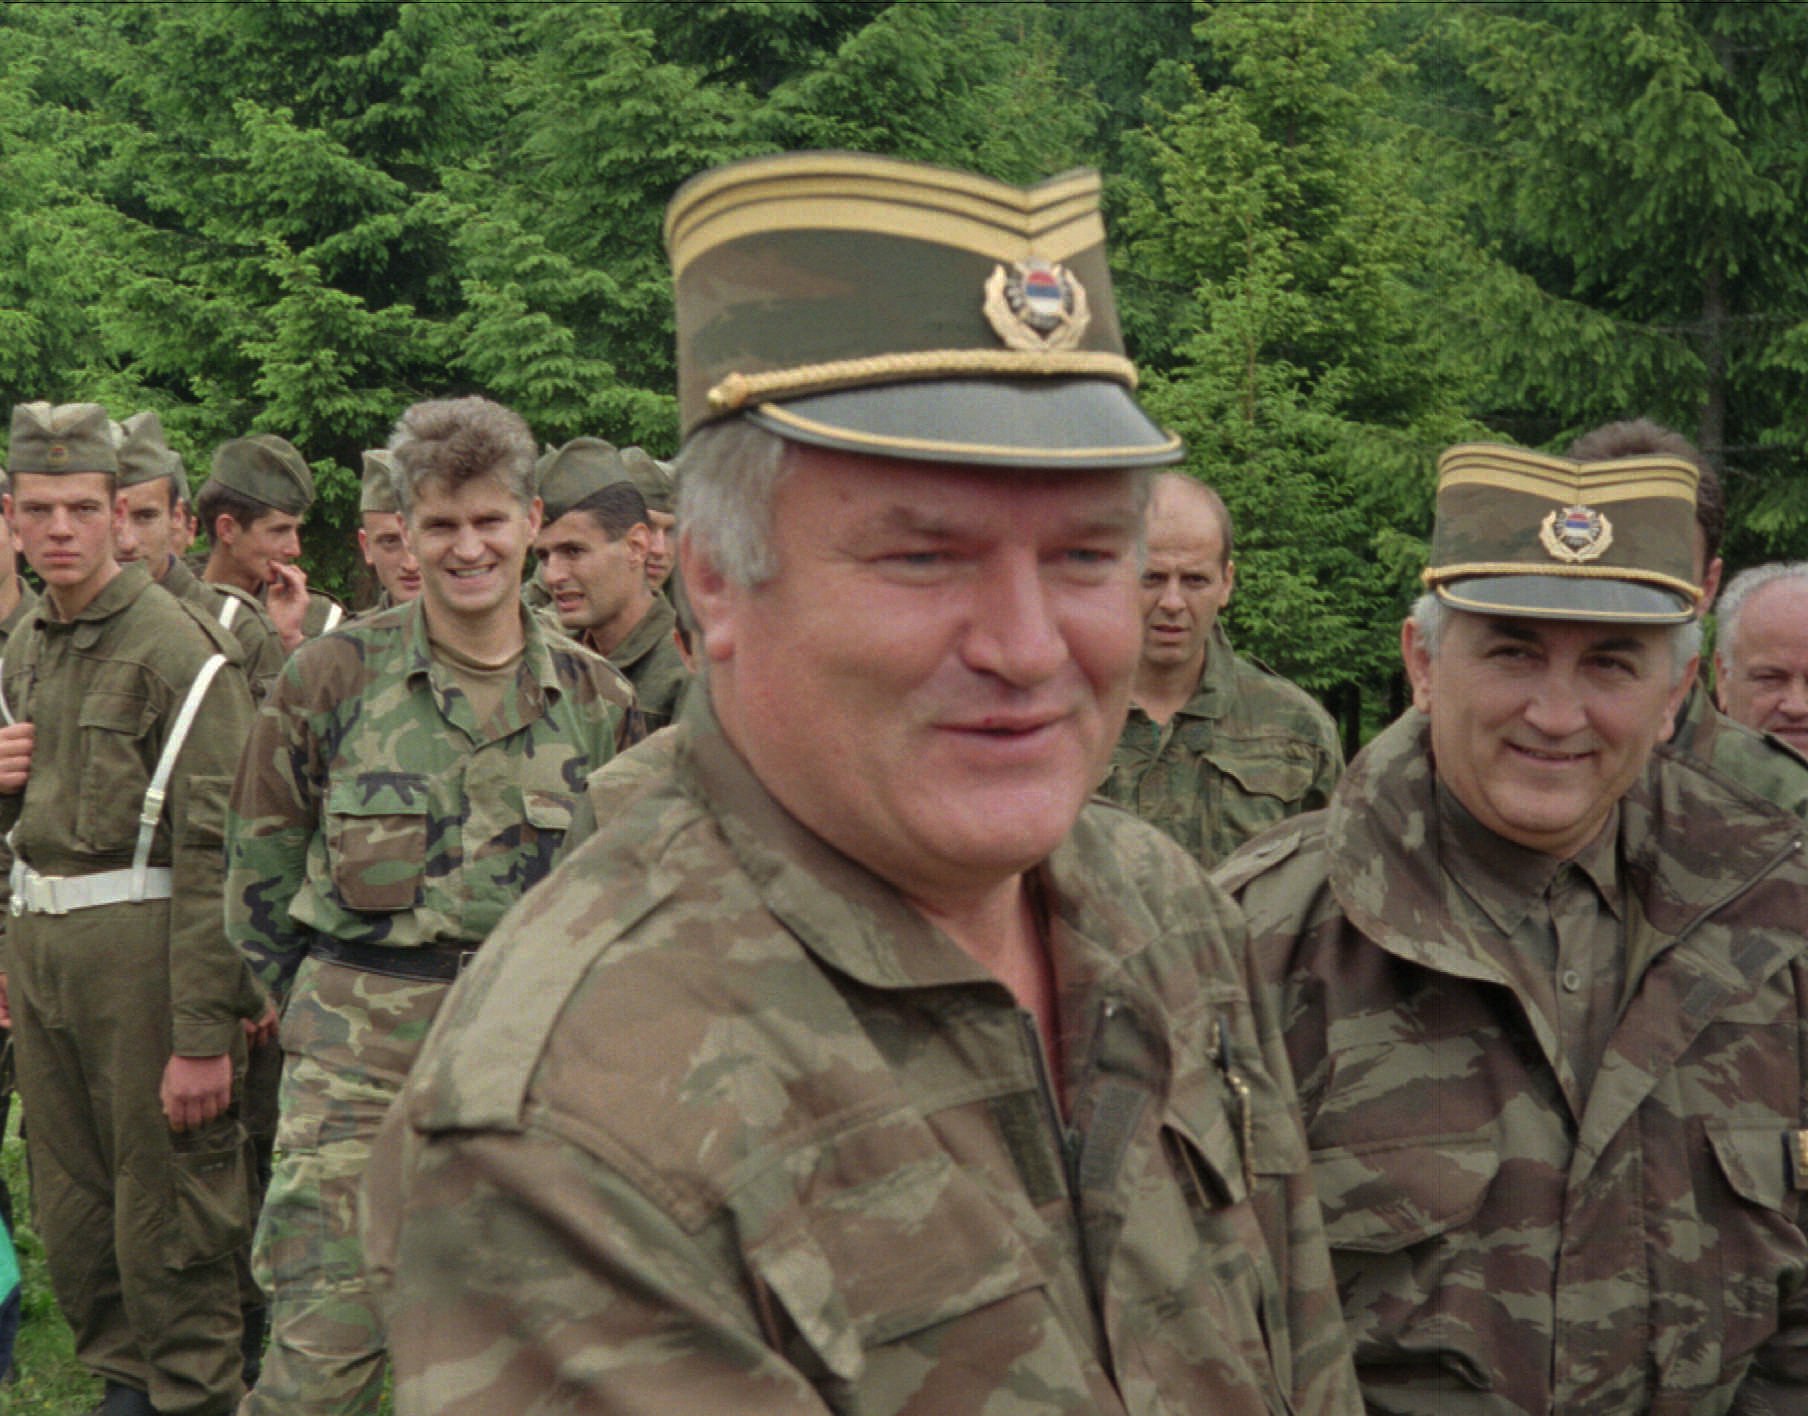 Folkmord, Ratko Mladic, Etnisk rensning, FN, Srebrenica, Forna Jugoslavien